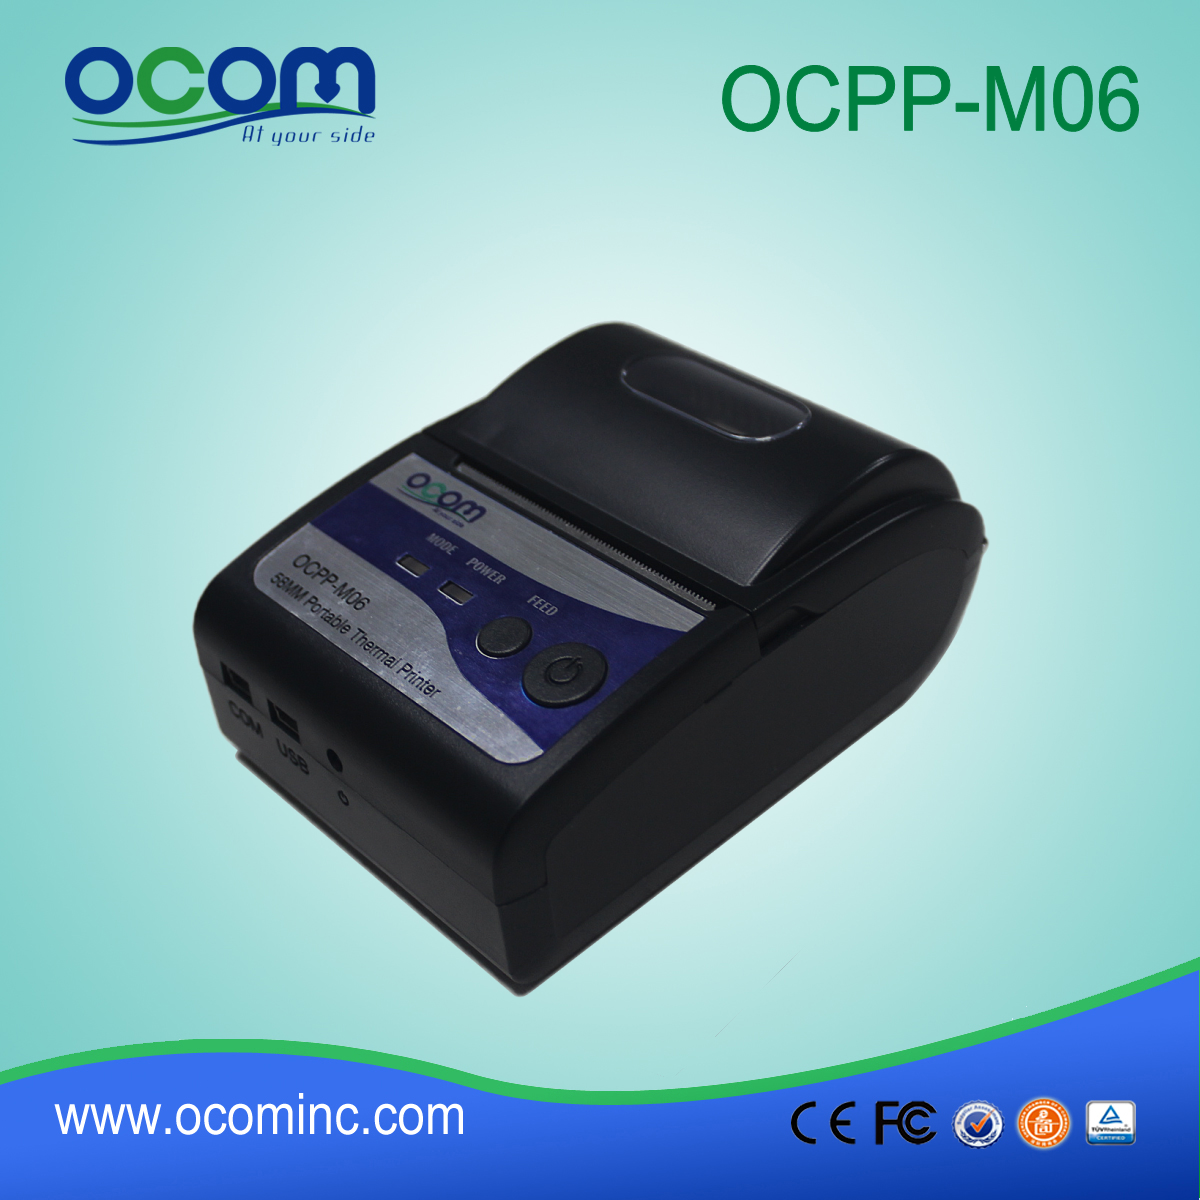 مصنع (OCPP-M06) الصين OCOM 58mm وطابعة حرارية، طابعة حرارية رخيصة